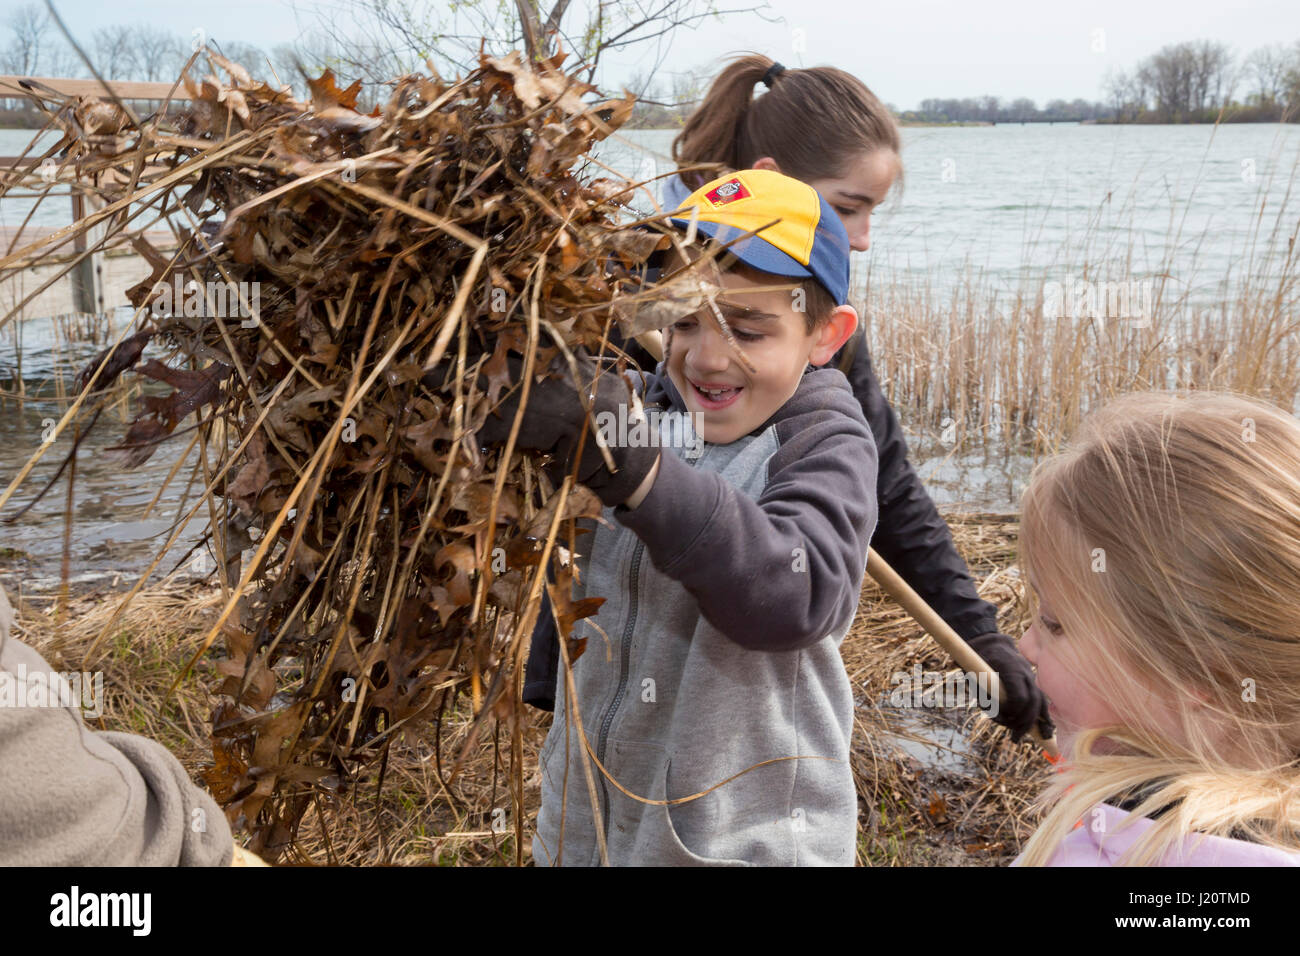 Detroit, Michigan - A Cub Scout Freiwilligen hilft sauber Belle Isle, ein State Park auf einer Insel im Detroit River. Stockfoto